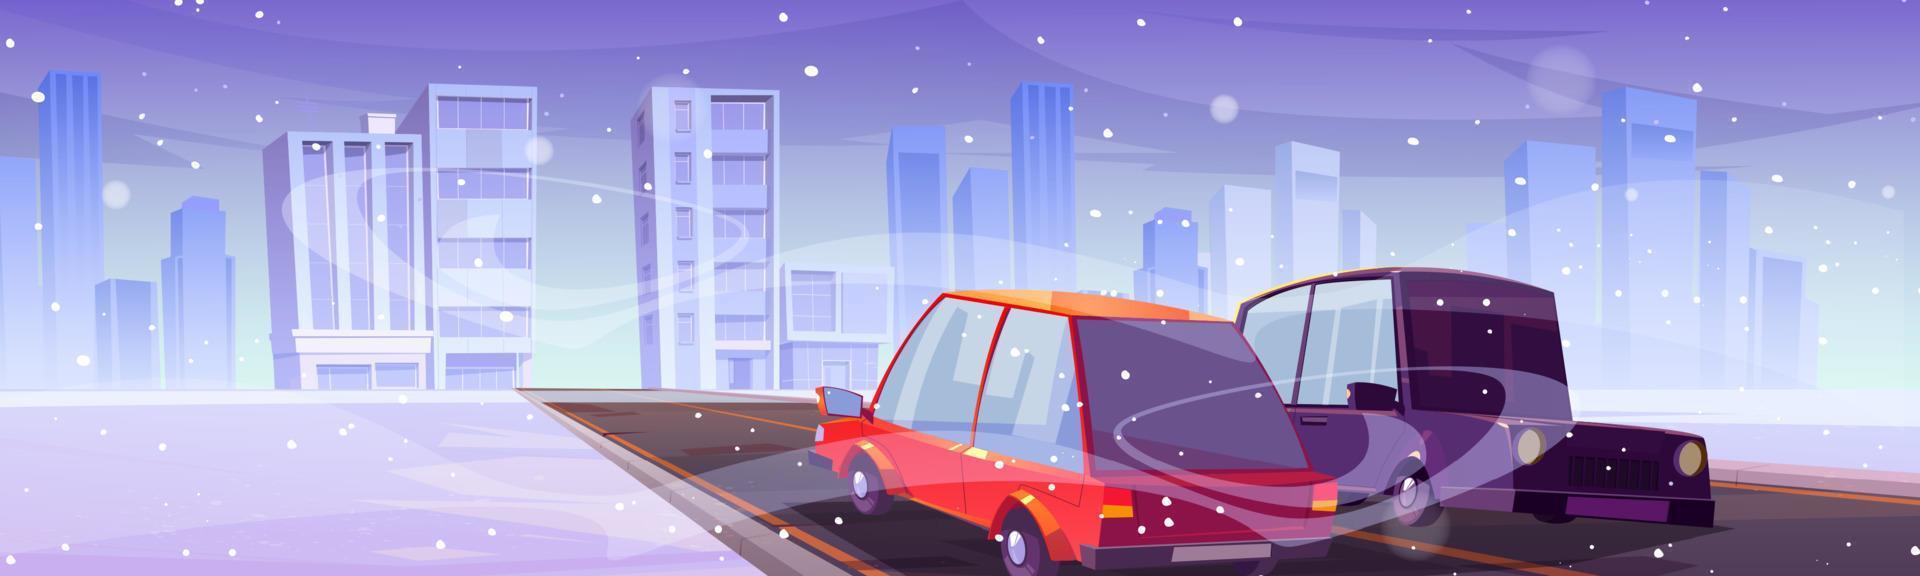 carros dirigindo na estrada da cidade de inverno com neve caindo vetor